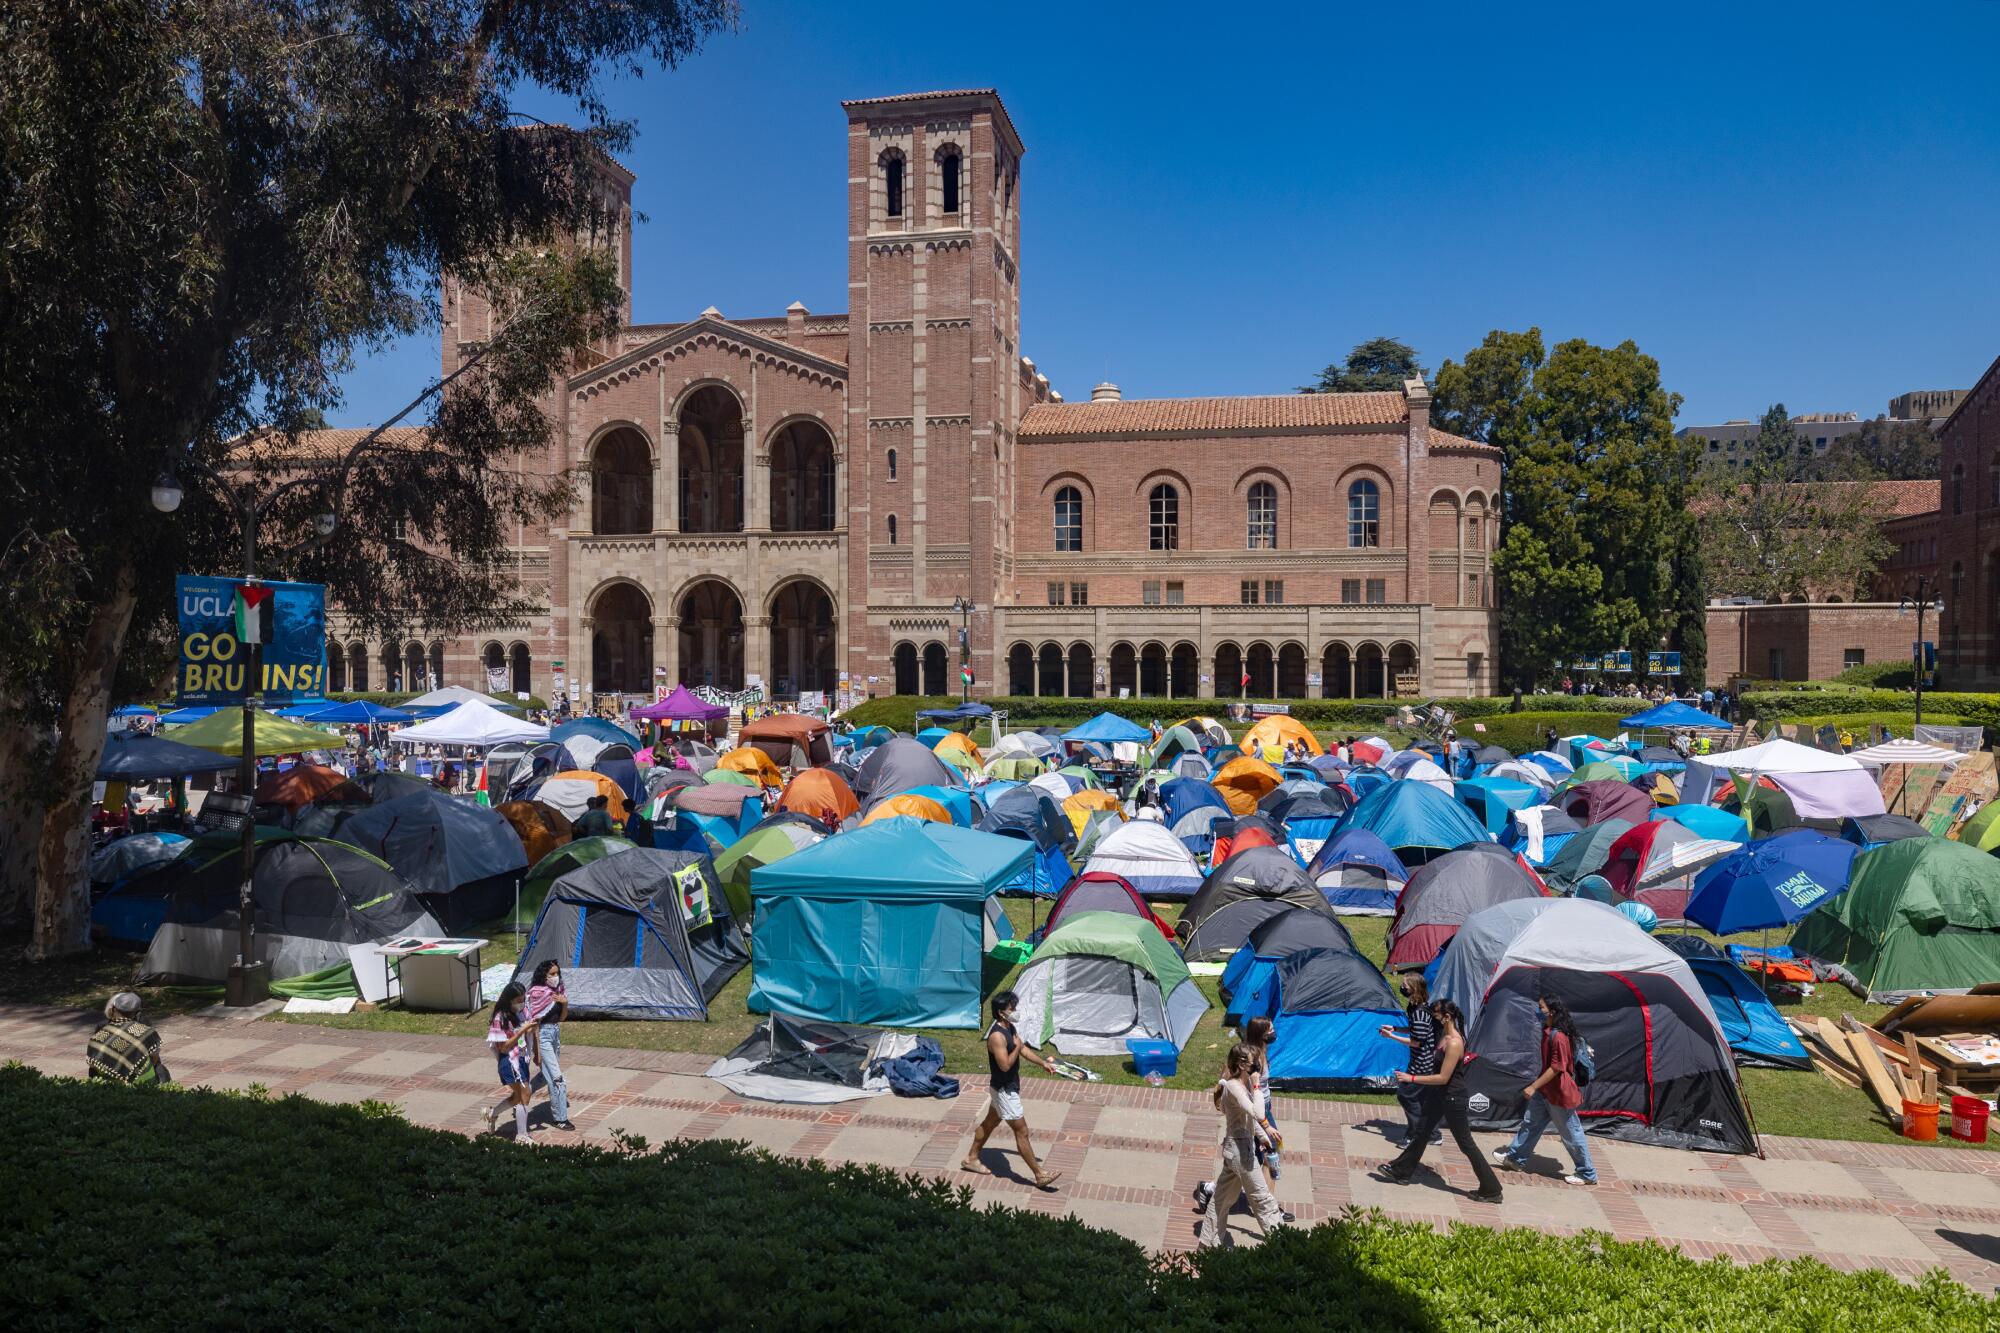 加州大学洛杉矶分校迪克森广场外草坪上的帐篷营地